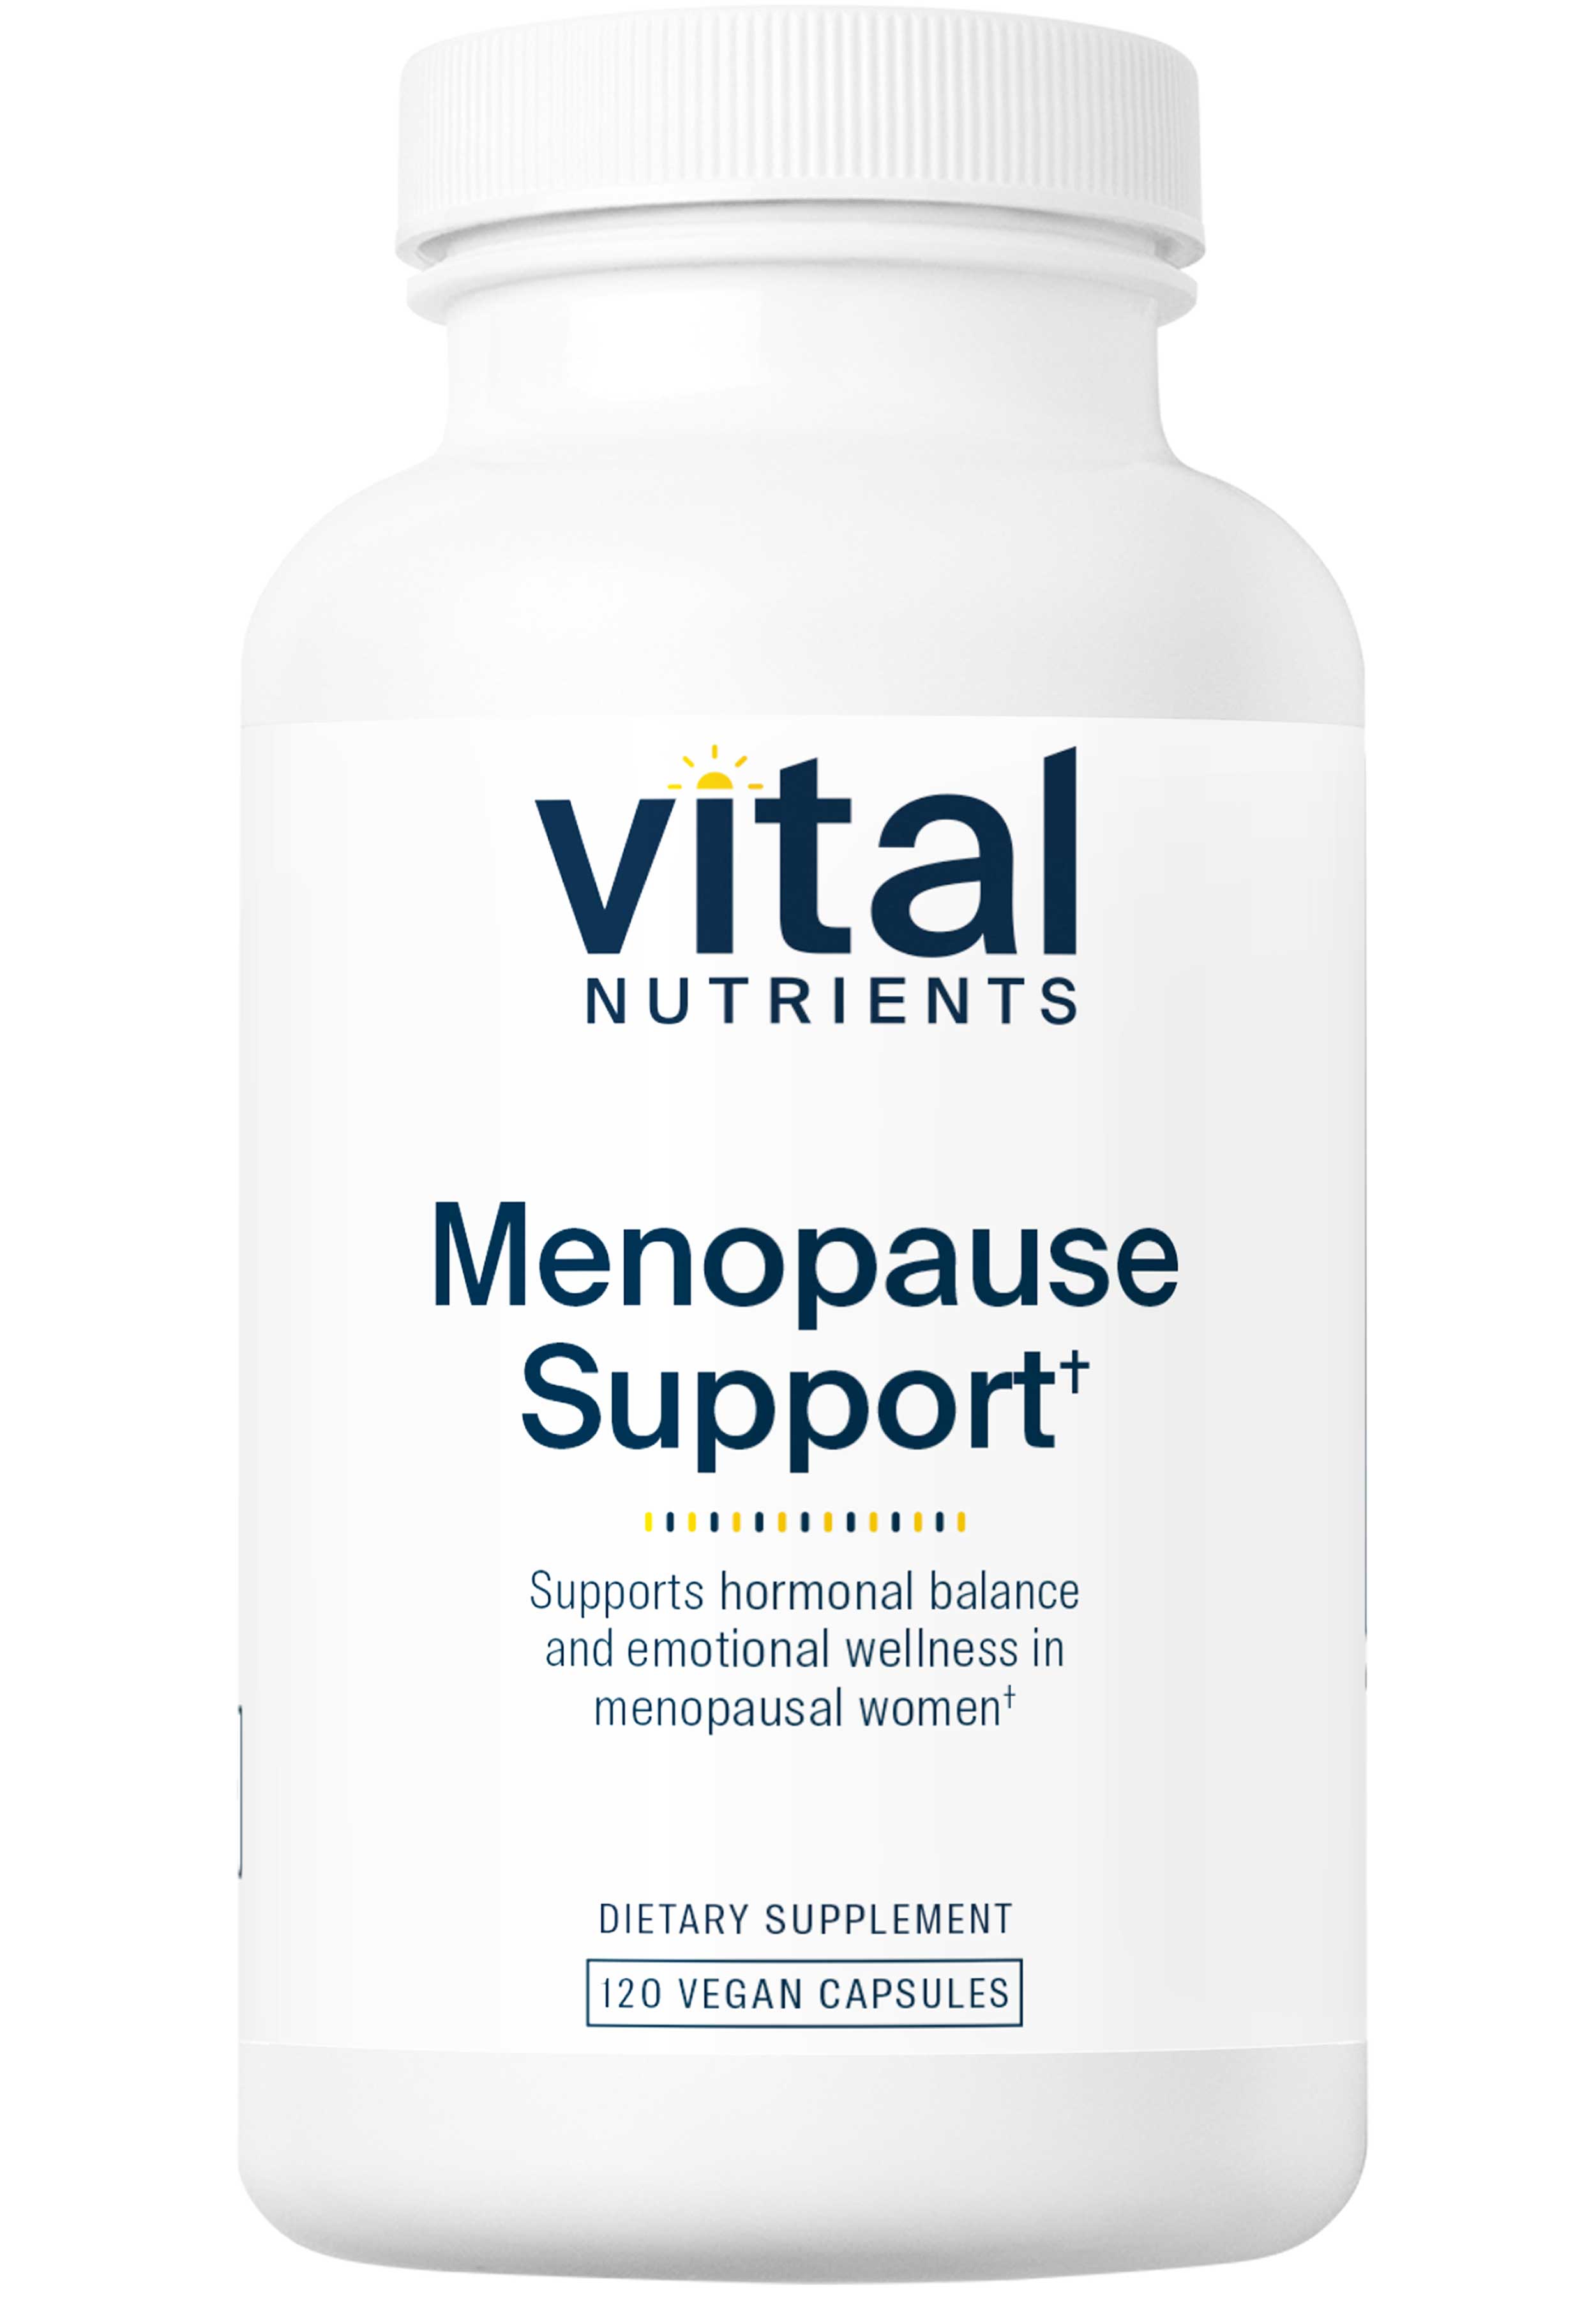 Vital Nutrients Menopause Support